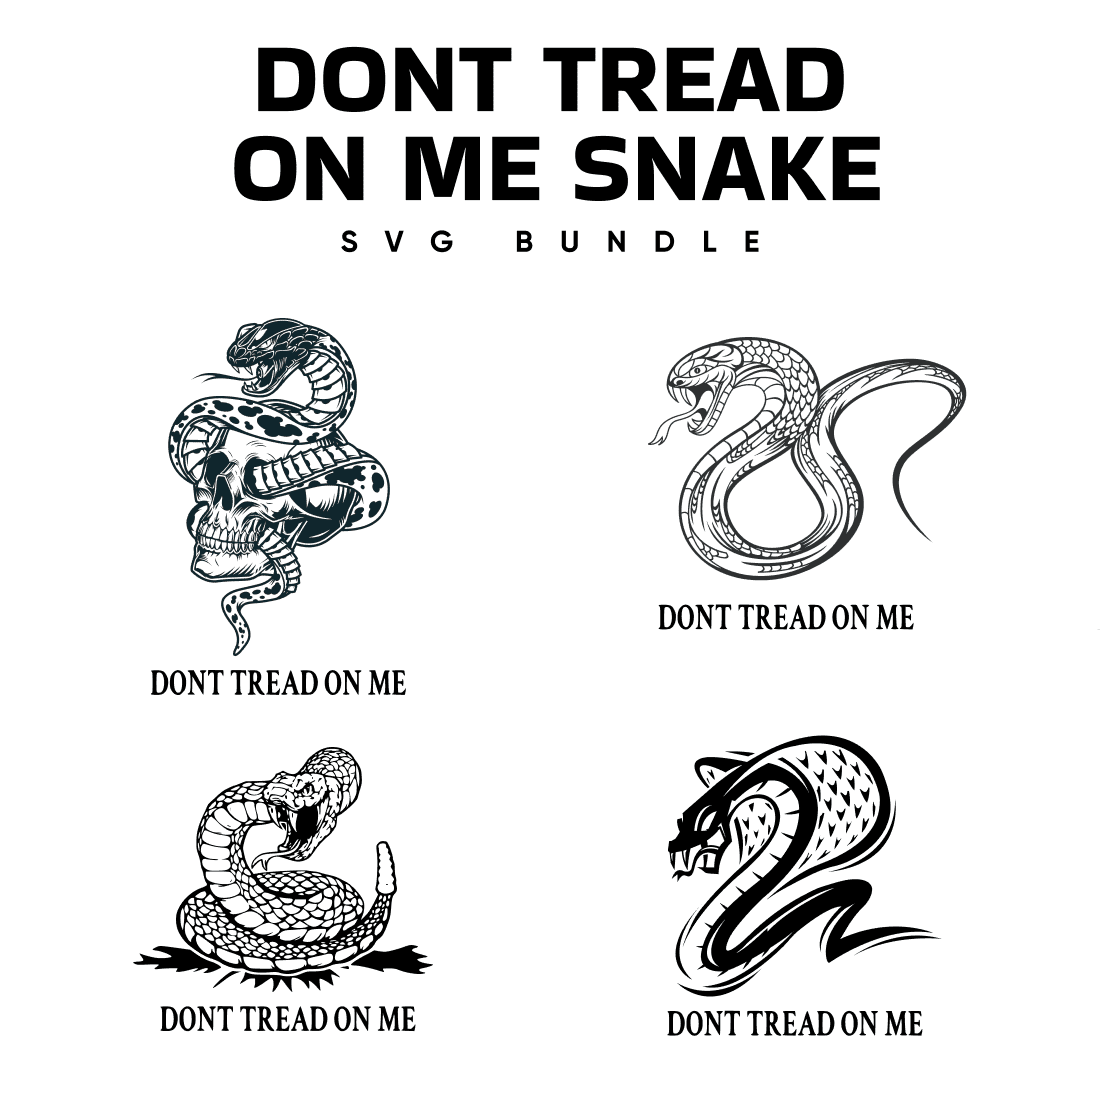 Don't tread on me snake svg bundle.